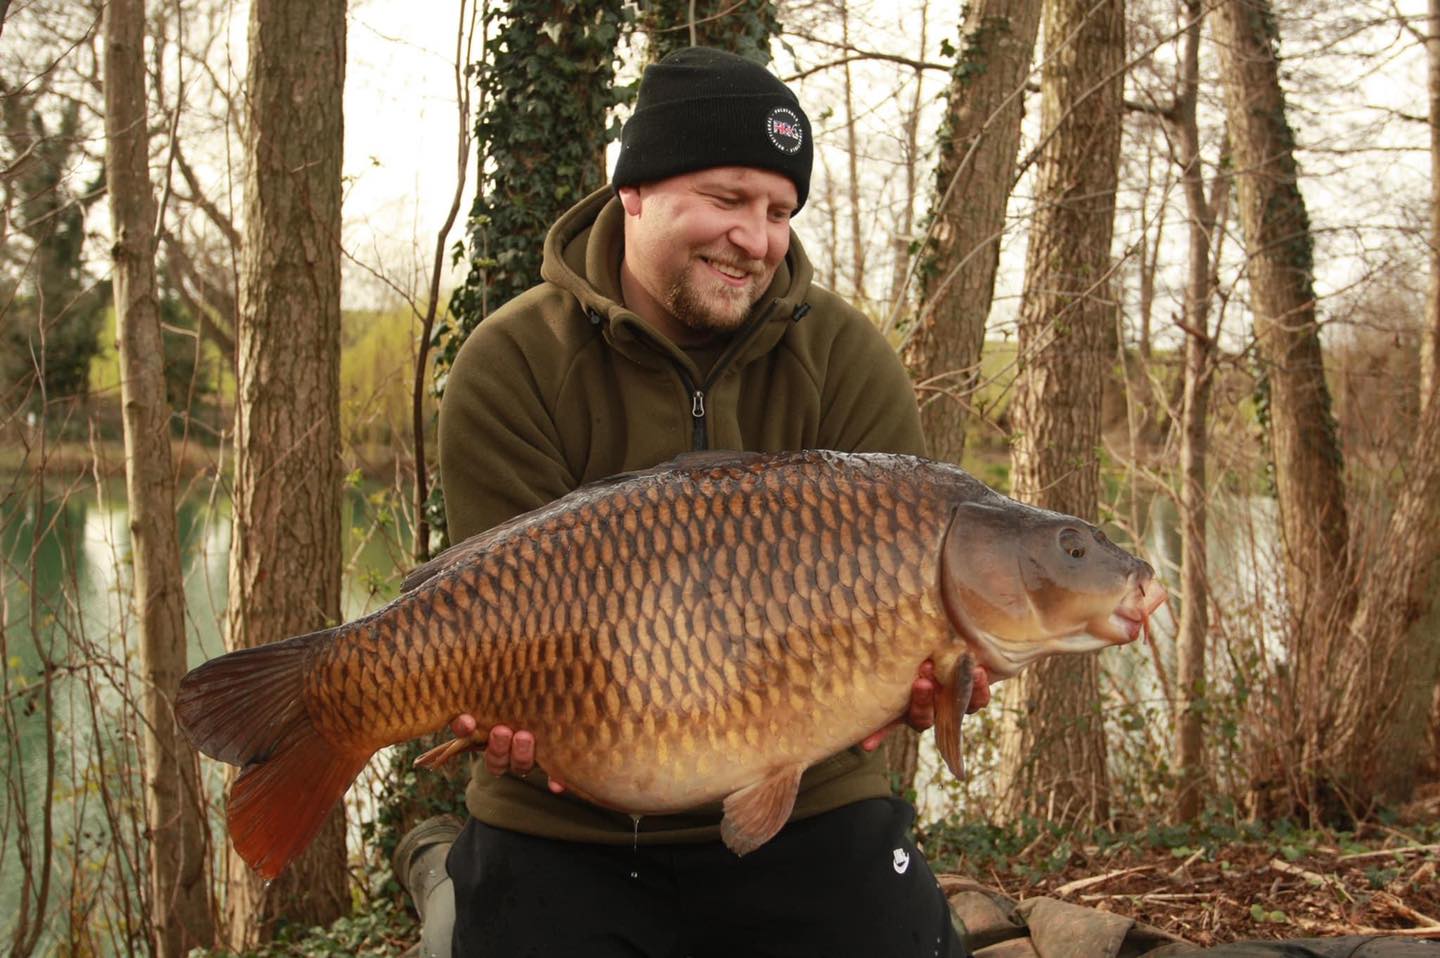 Biggest fish in the lake – Liam Robinson